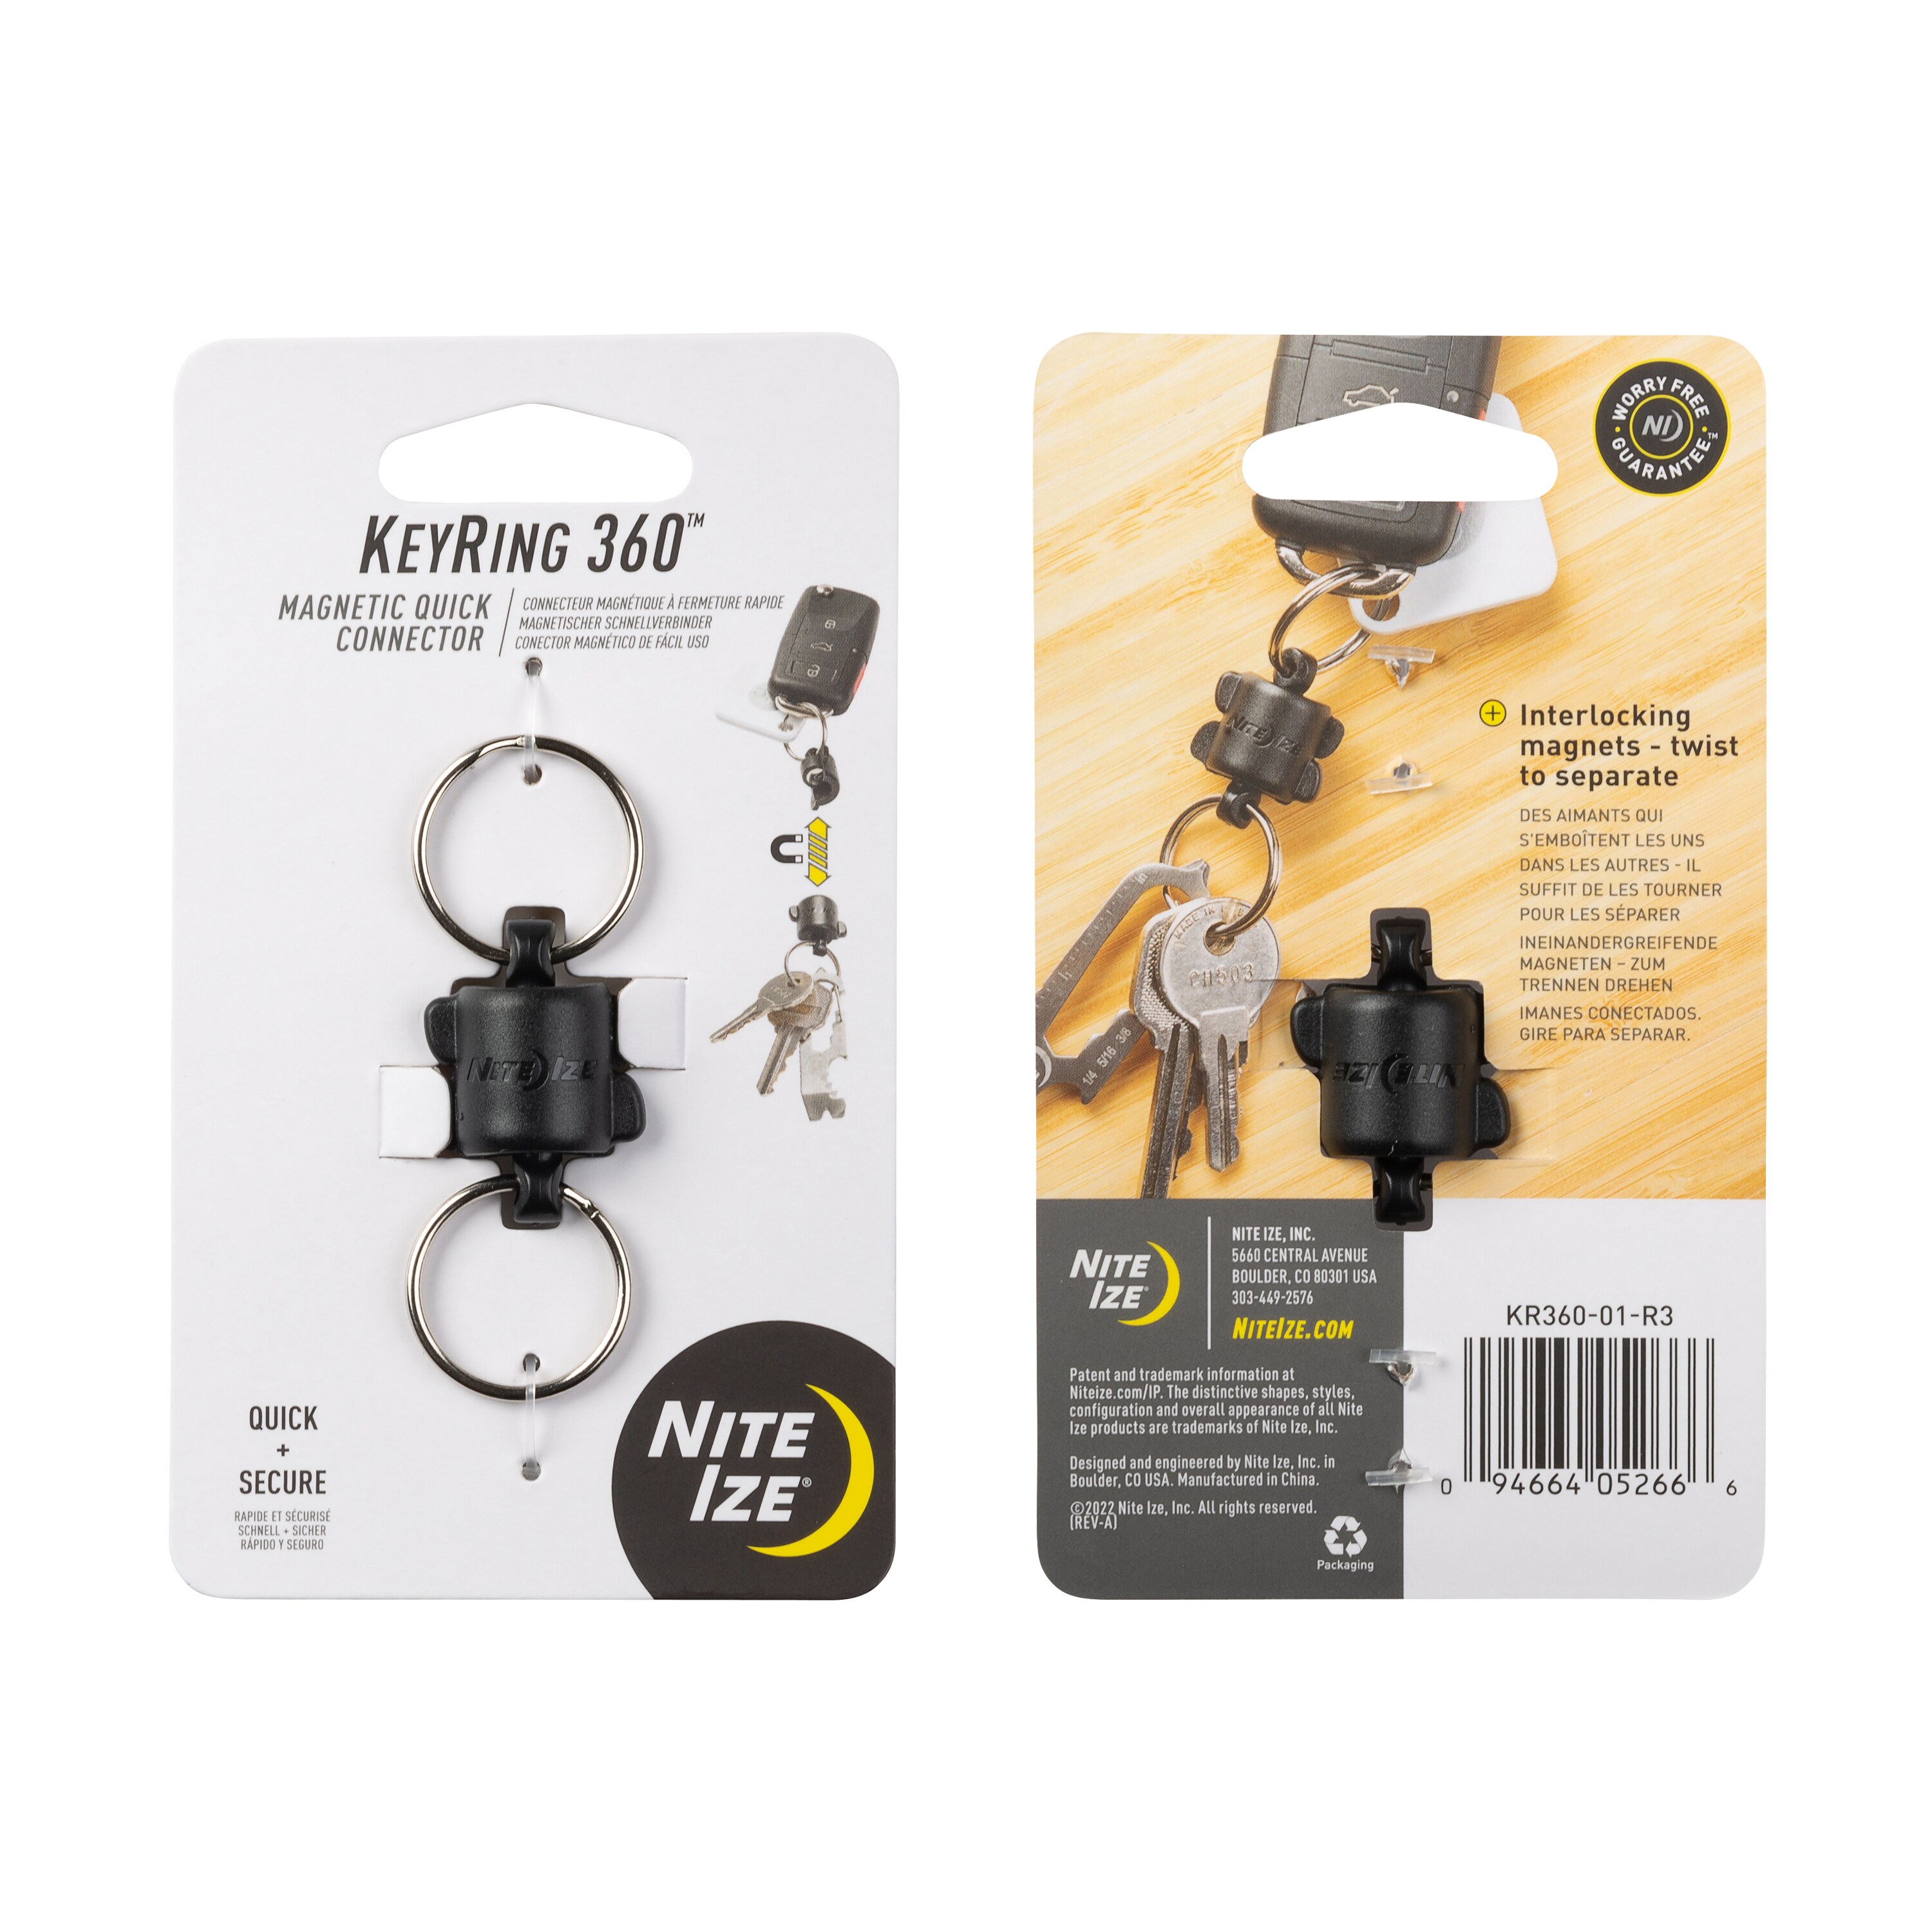 NITE IZE BRG-M1-R3 - Big Key Ring Type Key Ring